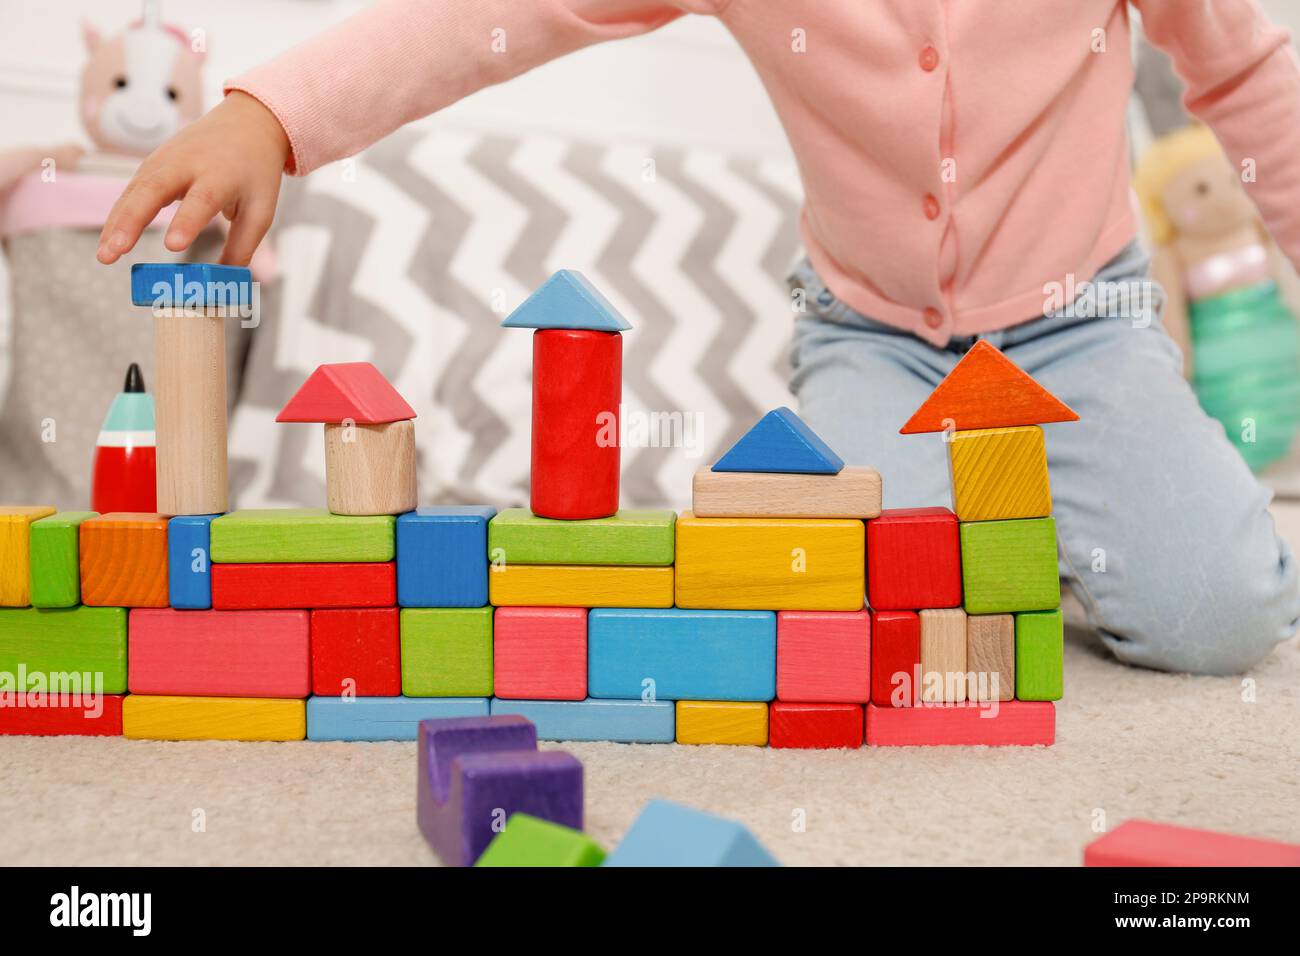 Jolie petite fille jouant avec des blocs de construction colorés à la maison, gros plan Banque D'Images